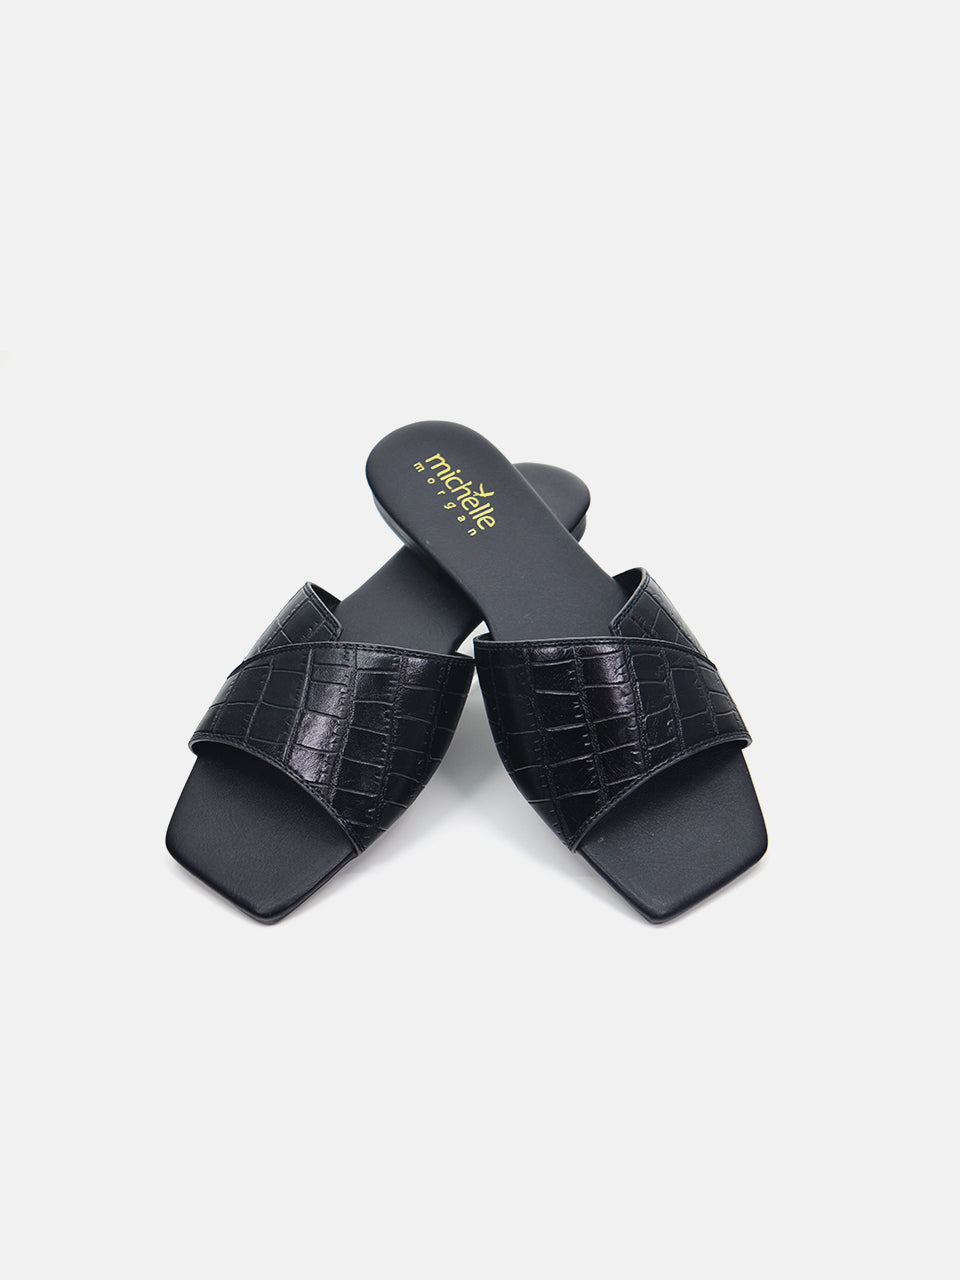 Michelle Morgan 114RJ80C Women's Flat Sandals #color_Black